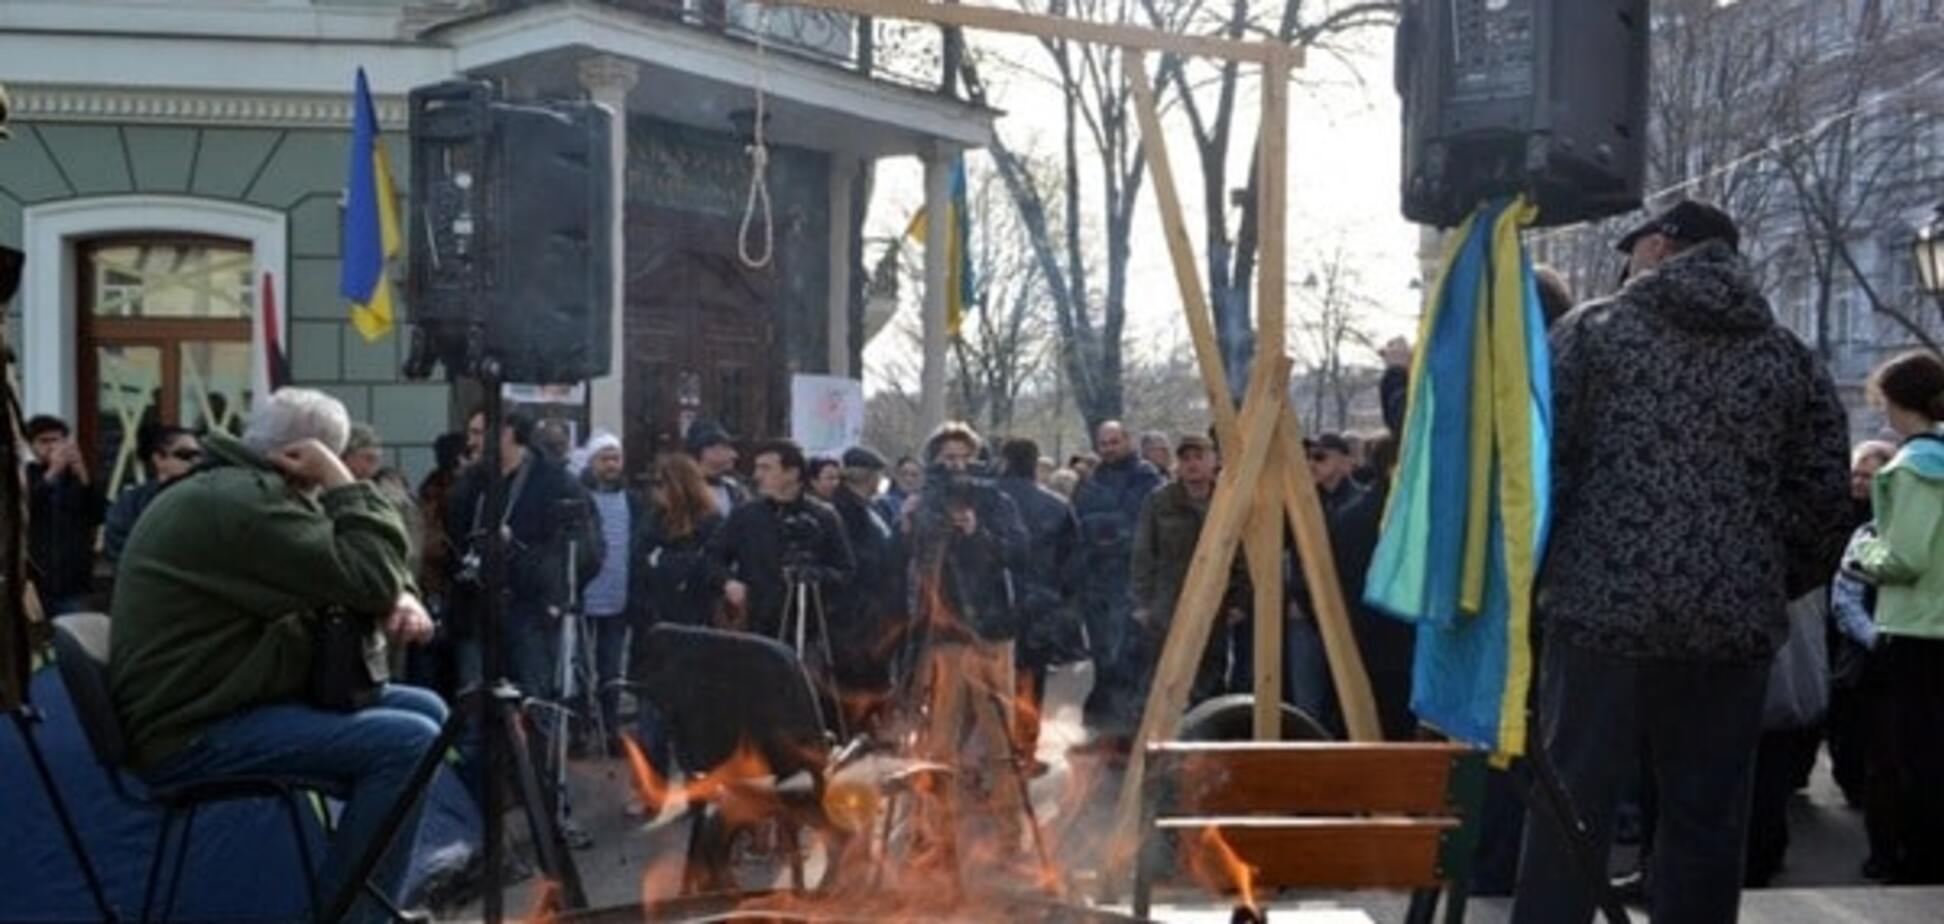 Виселица и костры в бочках: в Одессе снова протестуют против Стоянова. Опубликованы фото